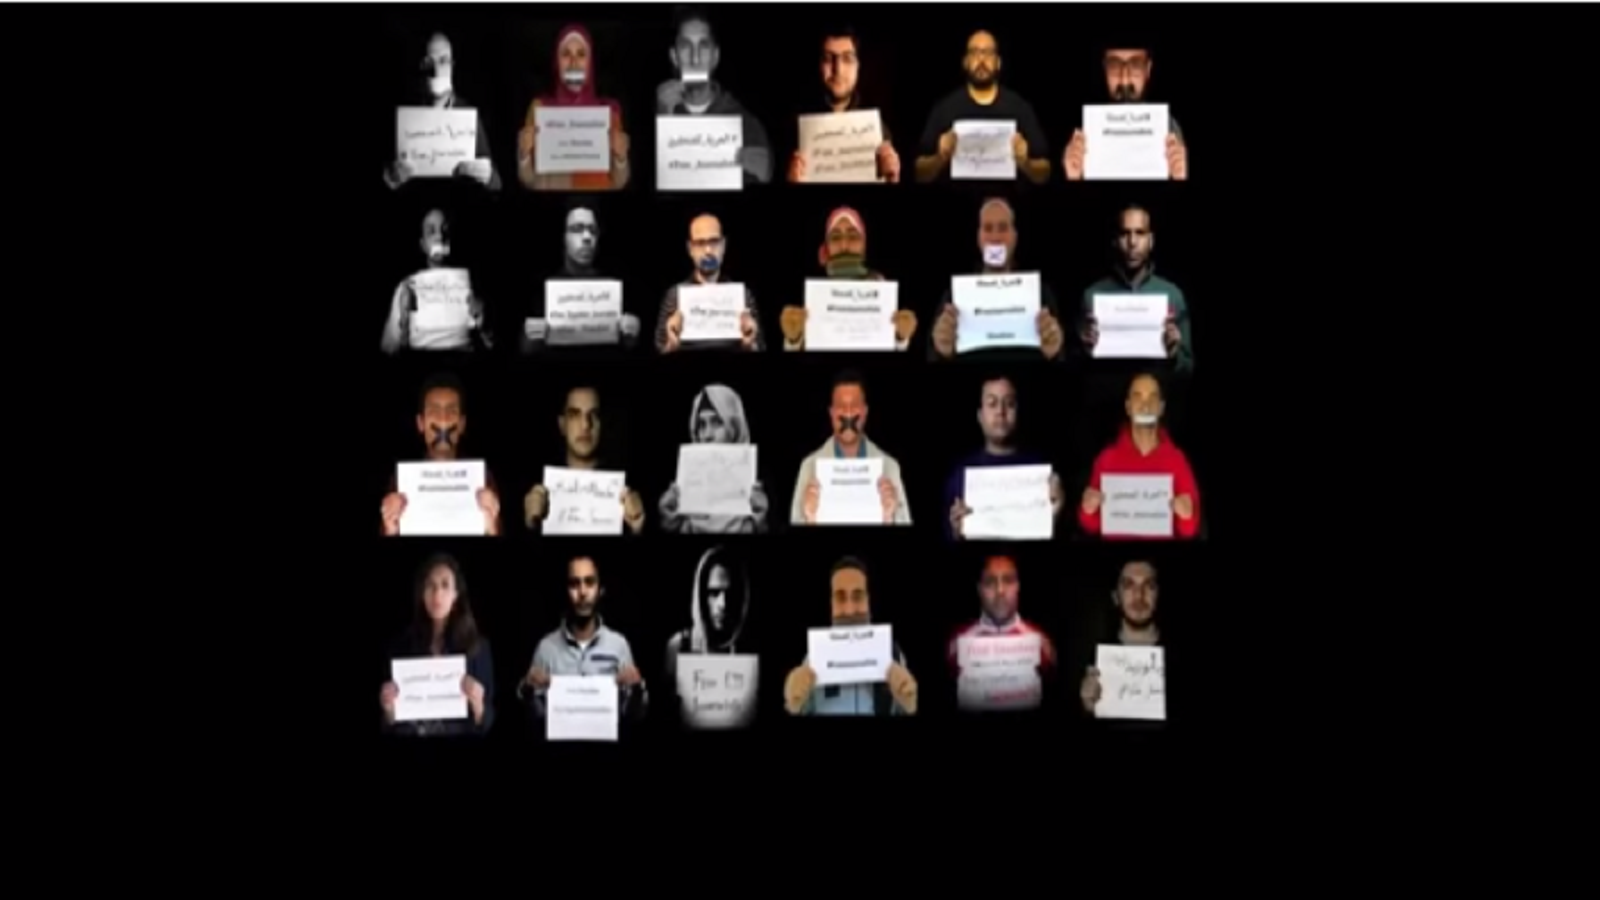 فيلم "تحت التهديد" للتضامن مع صحافيي مصر